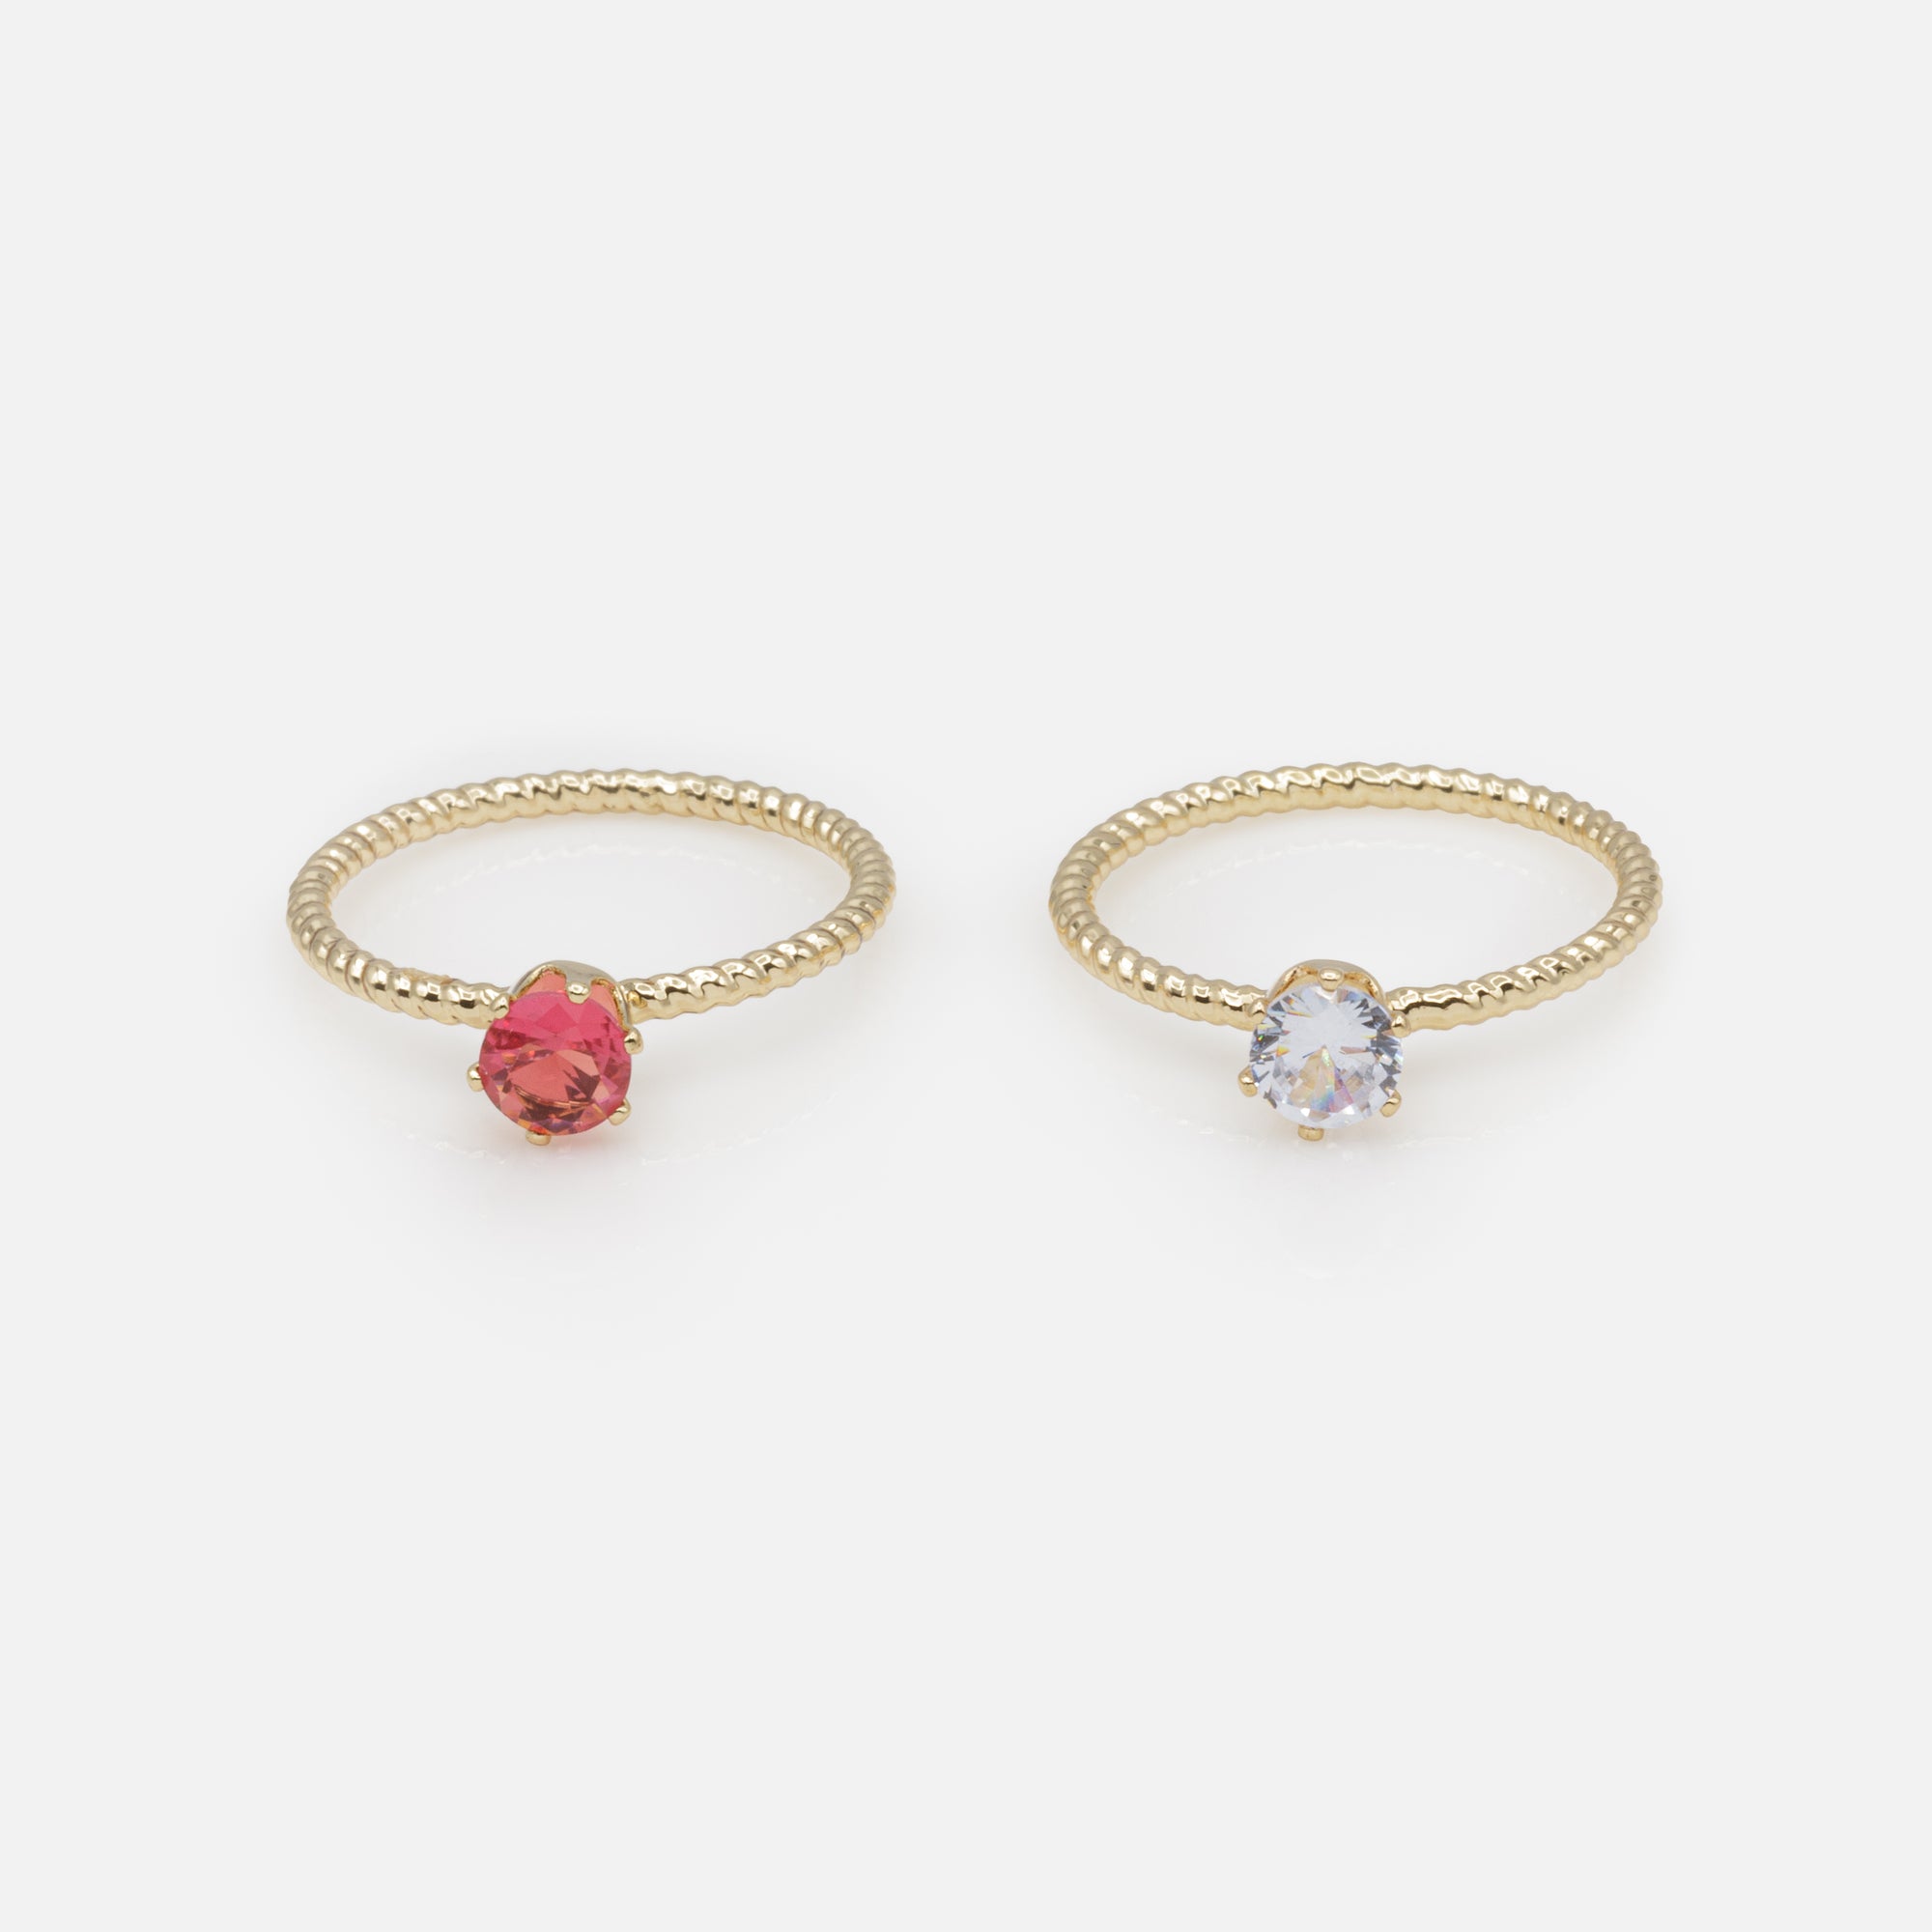 Duo de bagues dorées anneaux torsadés avec pierres rose et blanche